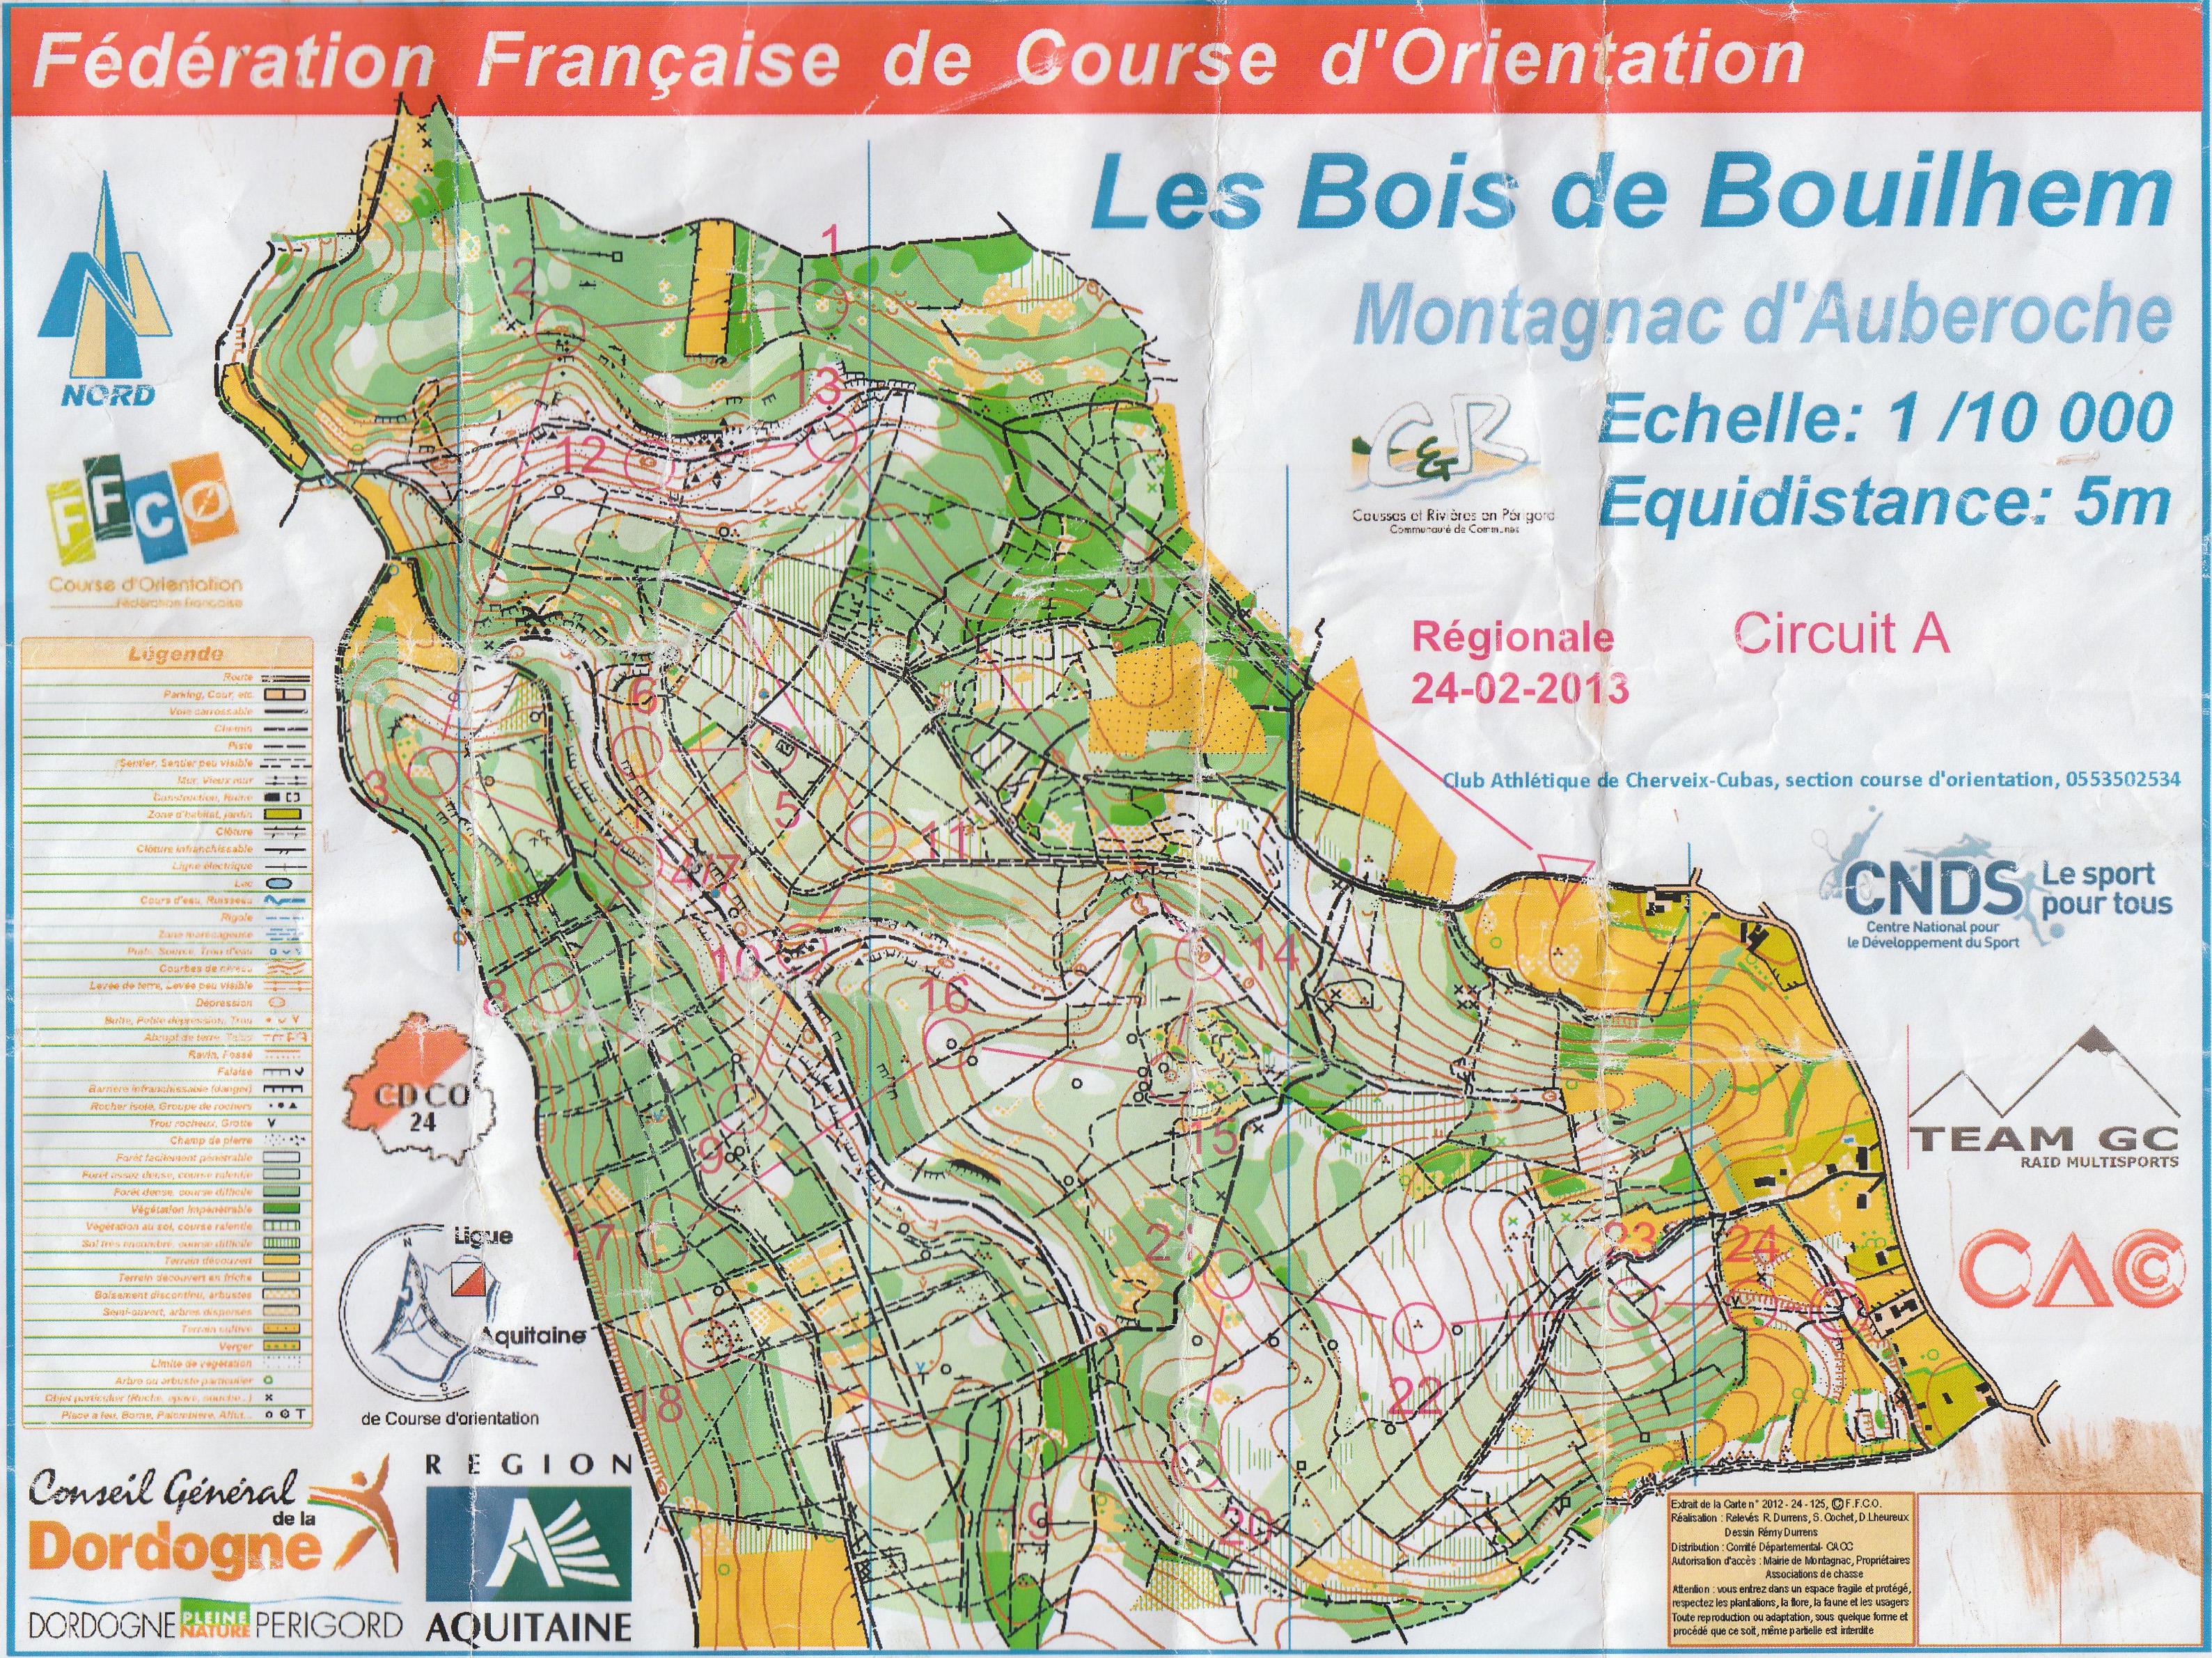 Régionale LD Aquitaine (24/02/2013)